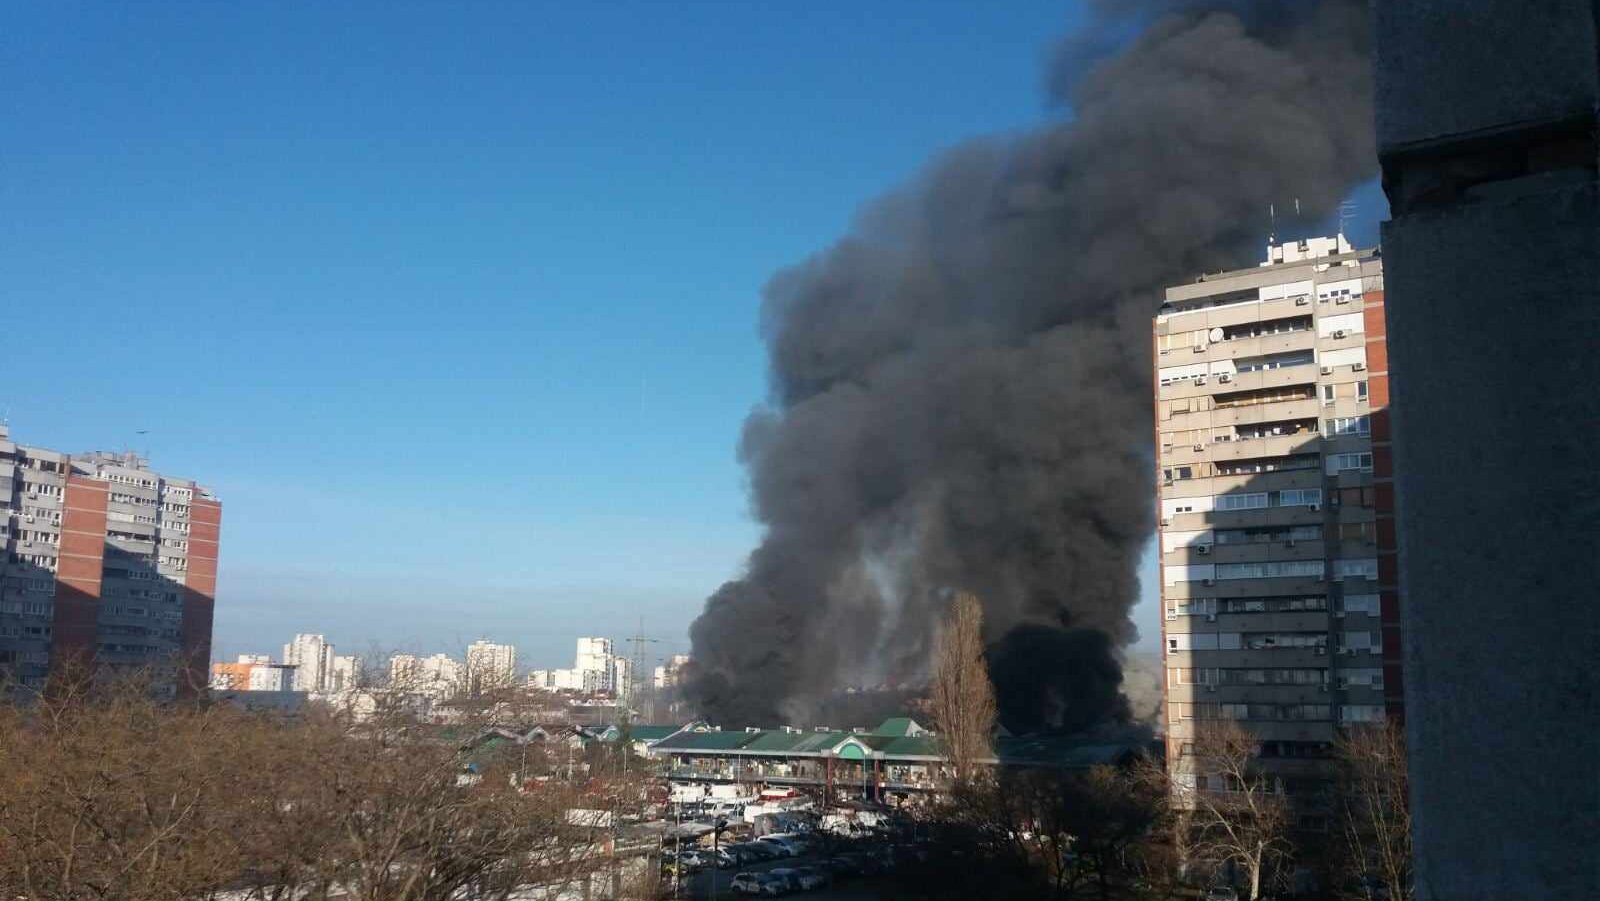 Lokalizovan požar u Bloku 70, vazduh u Beogradu zagađen (FOTO/VIDEO) 5